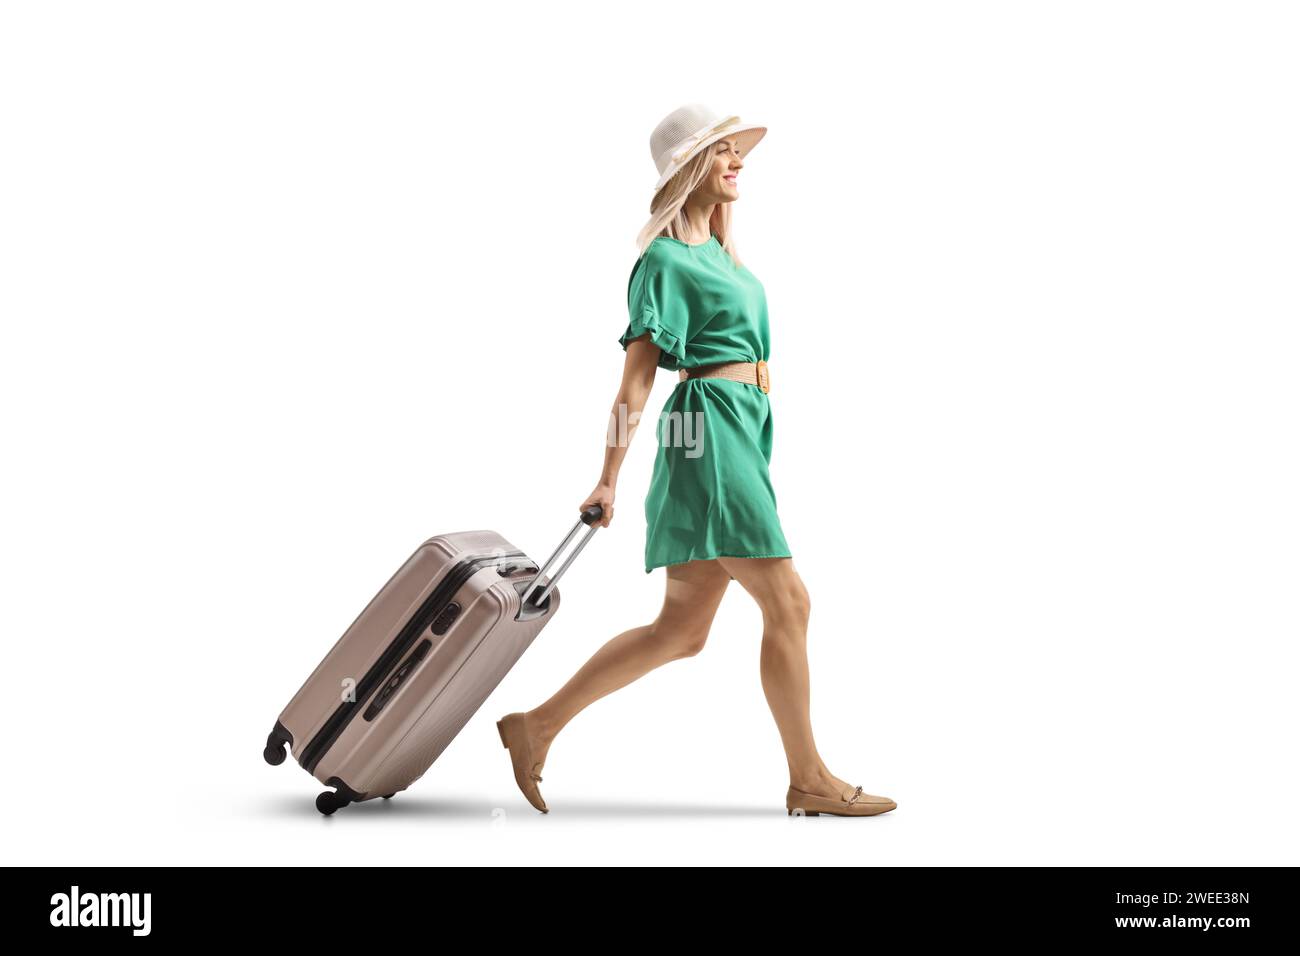 Jeune femme dans une robe verte marchant et tirant une valise isolée sur fond blanc Banque D'Images